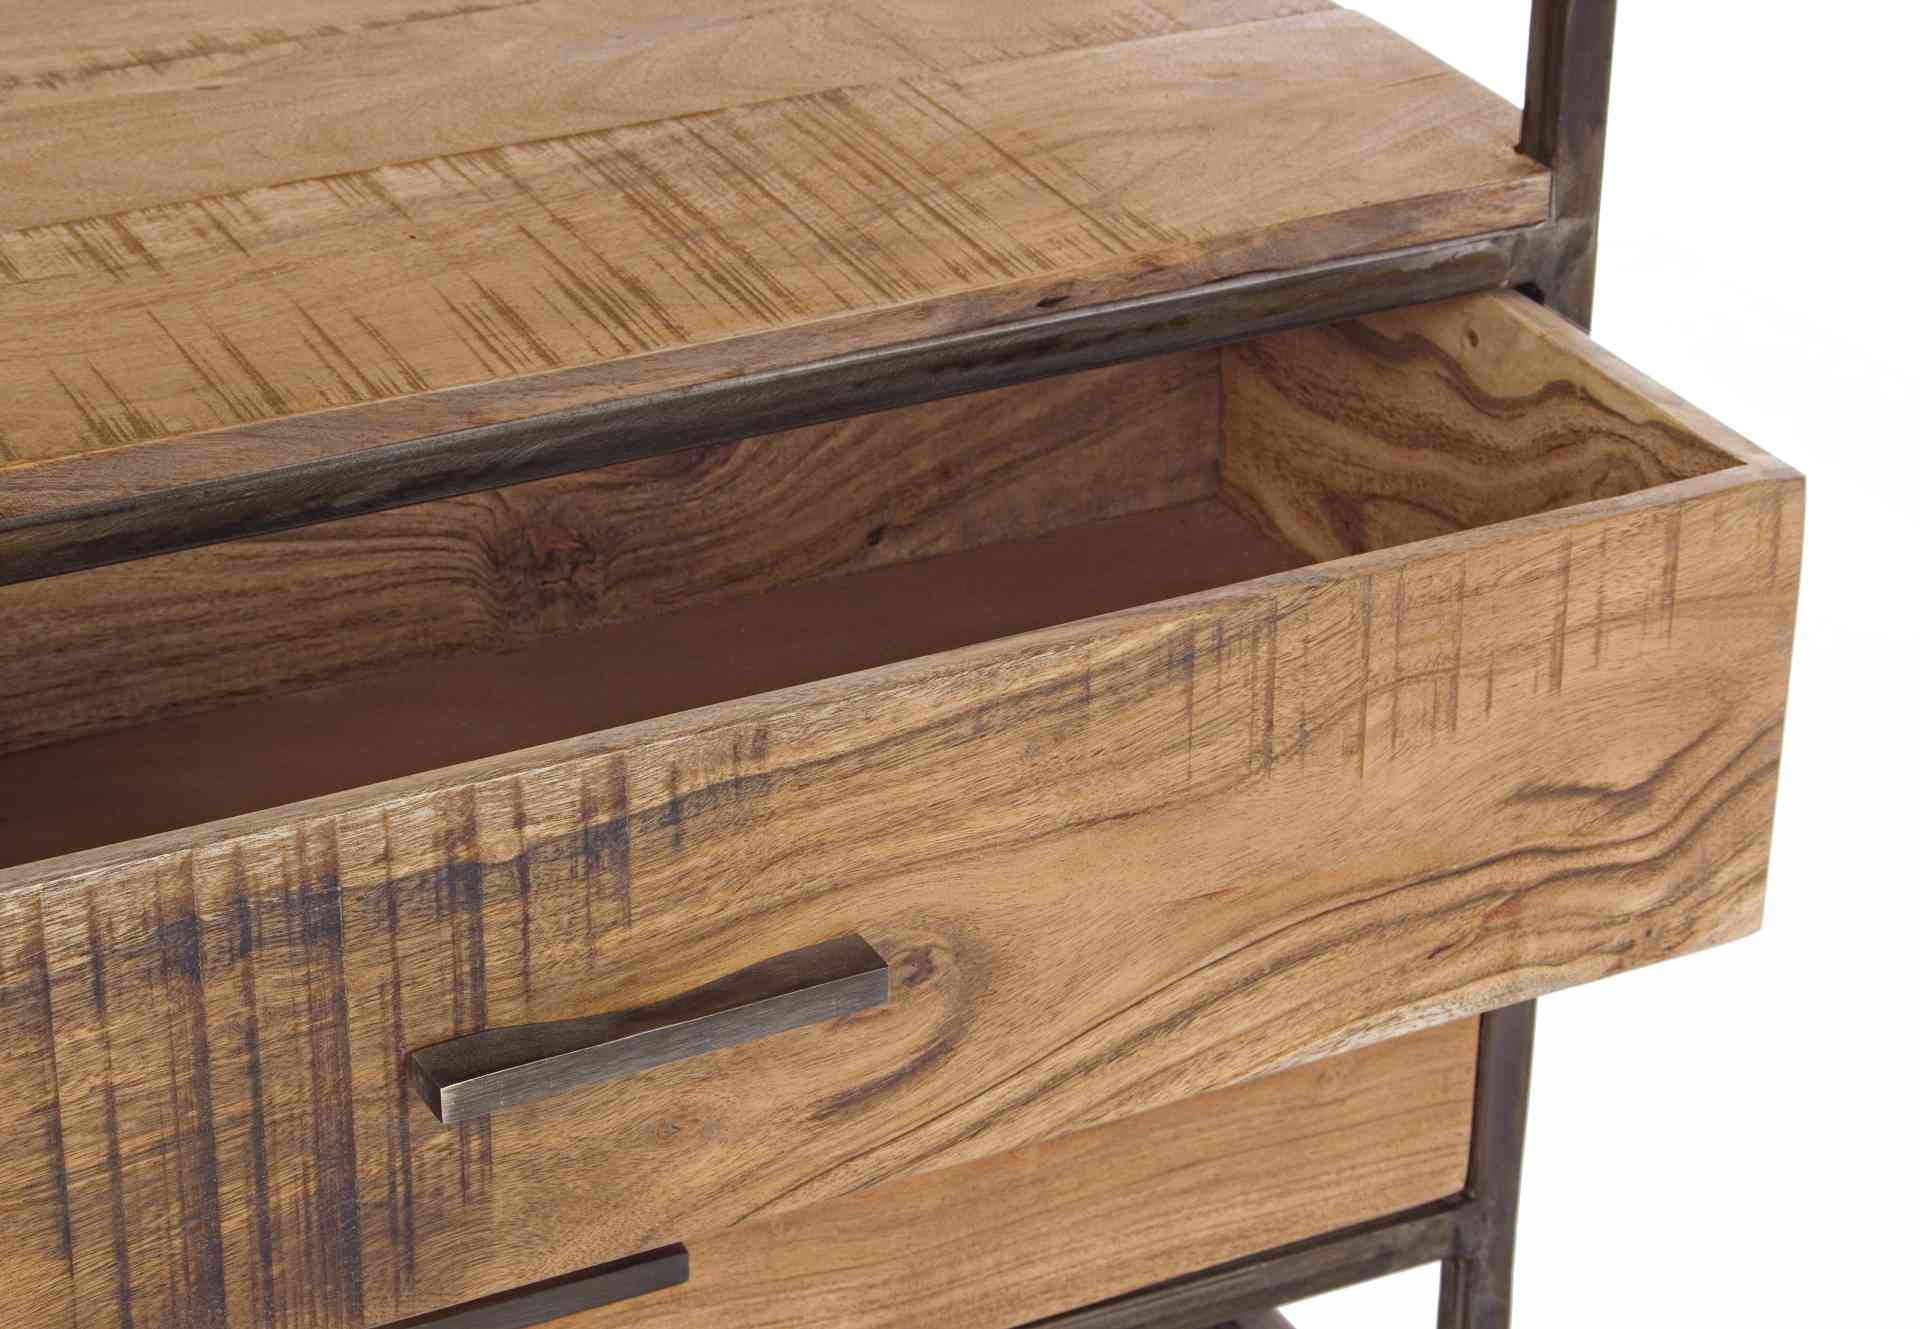 Das Bücherregal Elmer überzeugt mit seinem klassischen Design. Gefertigt wurde es aus Akazienholz, welches einen natürlichen Farbton besitzt. Das Gestell ist aus Metall und hat eine bronzene Farbe. Das Bücherregal verfügt über vier Schubladen und vier Fäc